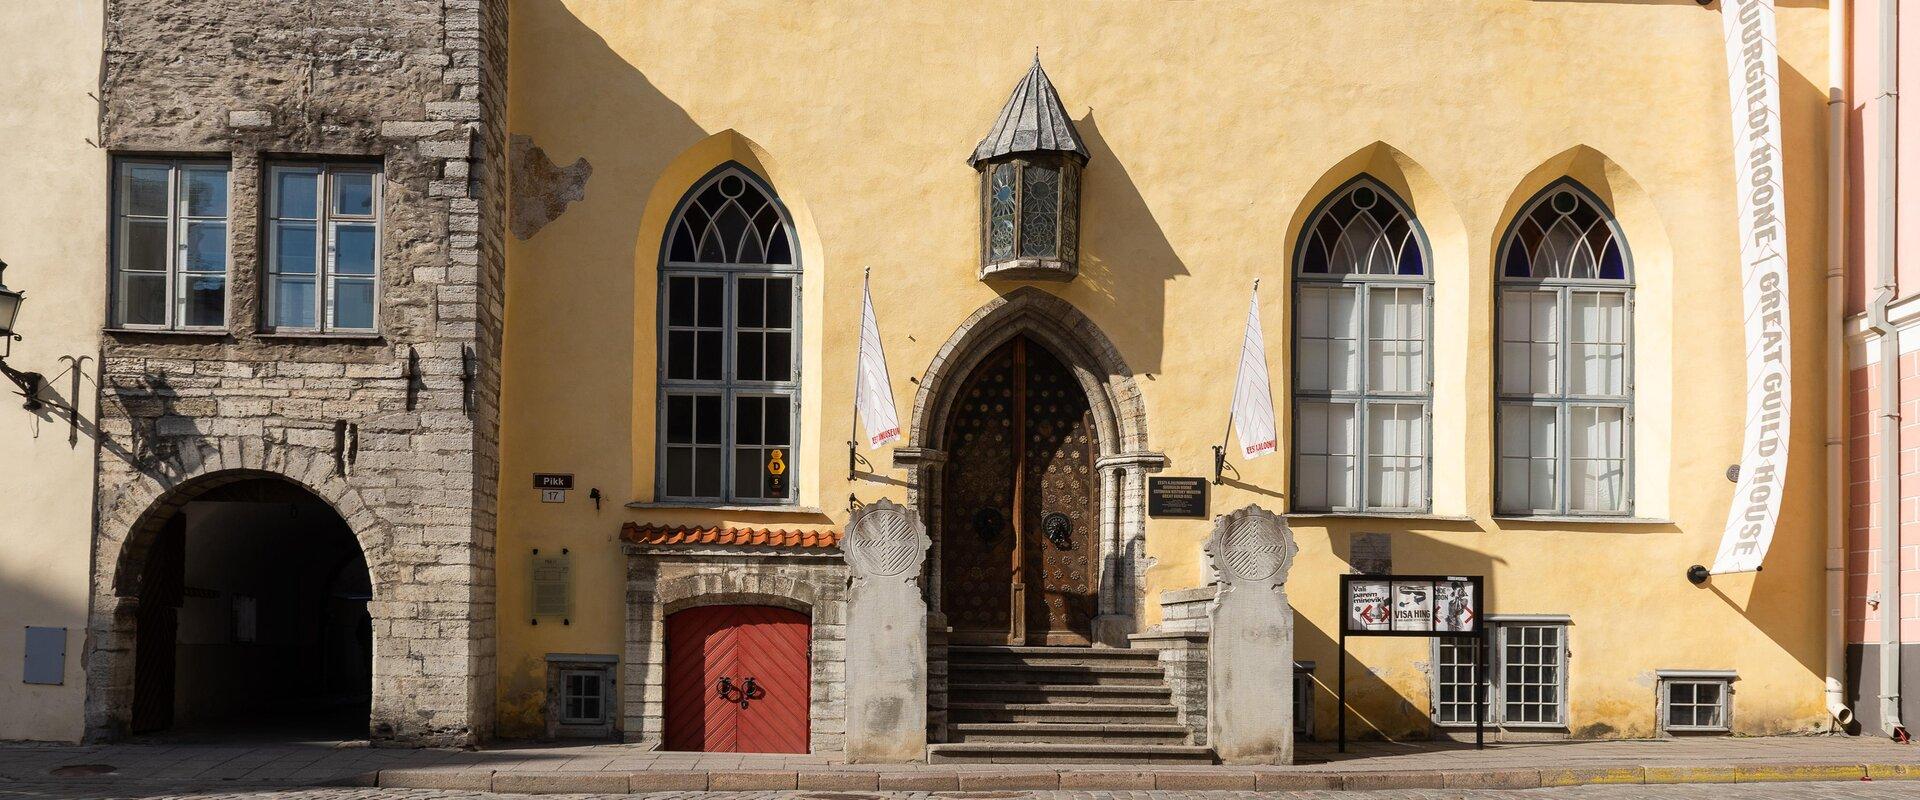 Das über 600 Jahre alte, würdevolle mittelalterliche Gebäude der Großgilde ist im Laufe der Jahrhunderte einer der bekanntesten Orte der Stadt für die